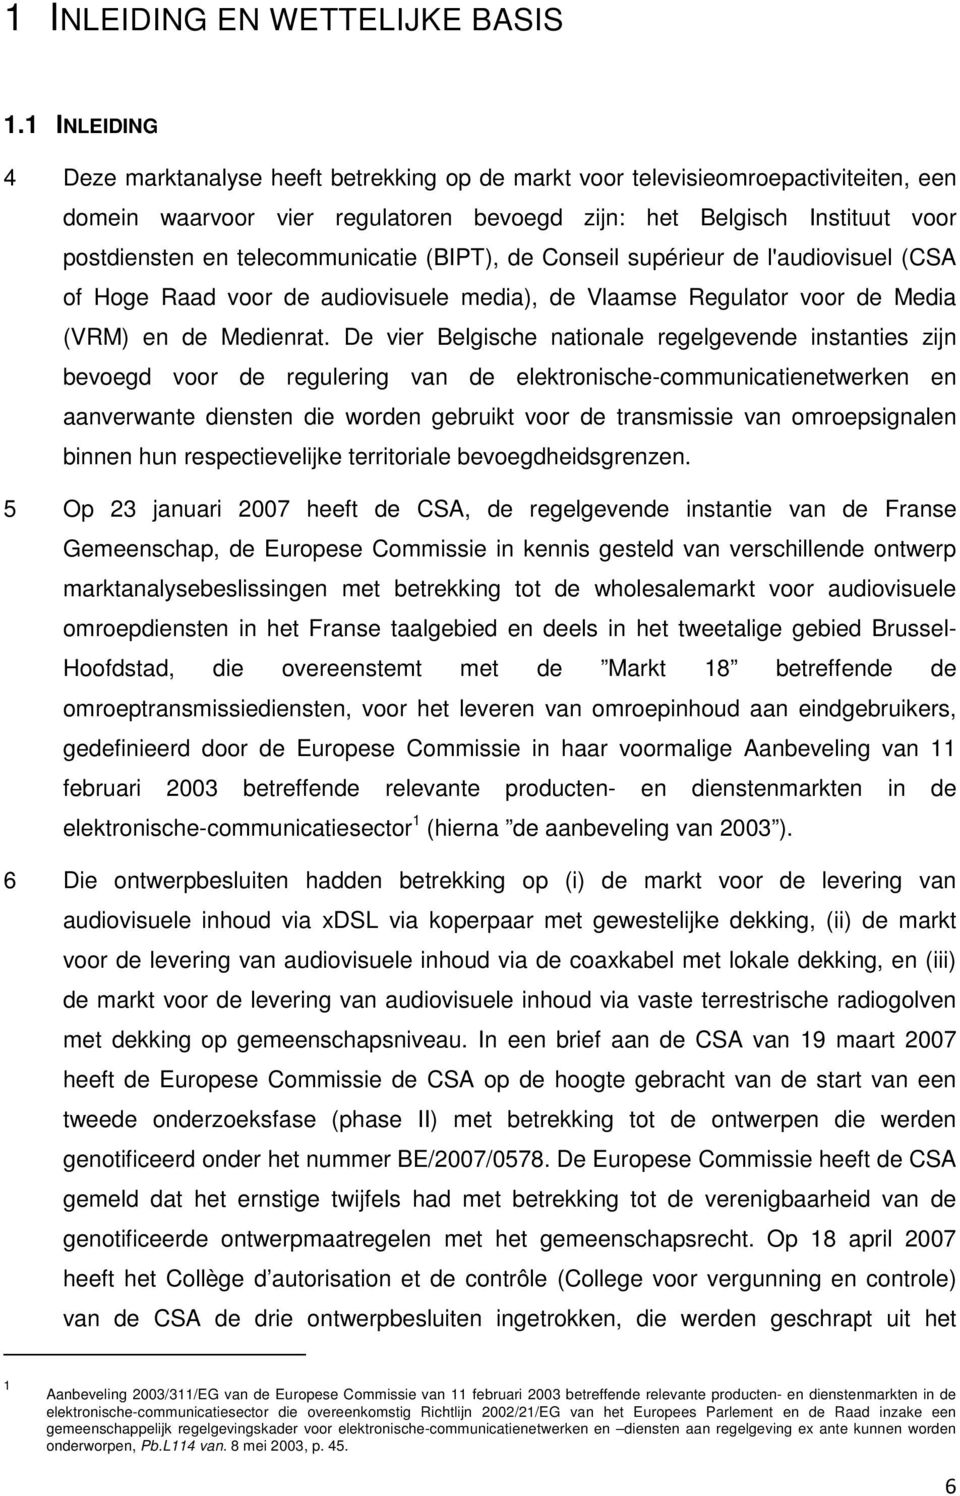 telecommunicatie (BIPT), de Conseil supérieur de l'audiovisuel (CSA of Hoge Raad voor de audiovisuele media), de Vlaamse Regulator voor de Media (VRM) en de Medienrat.